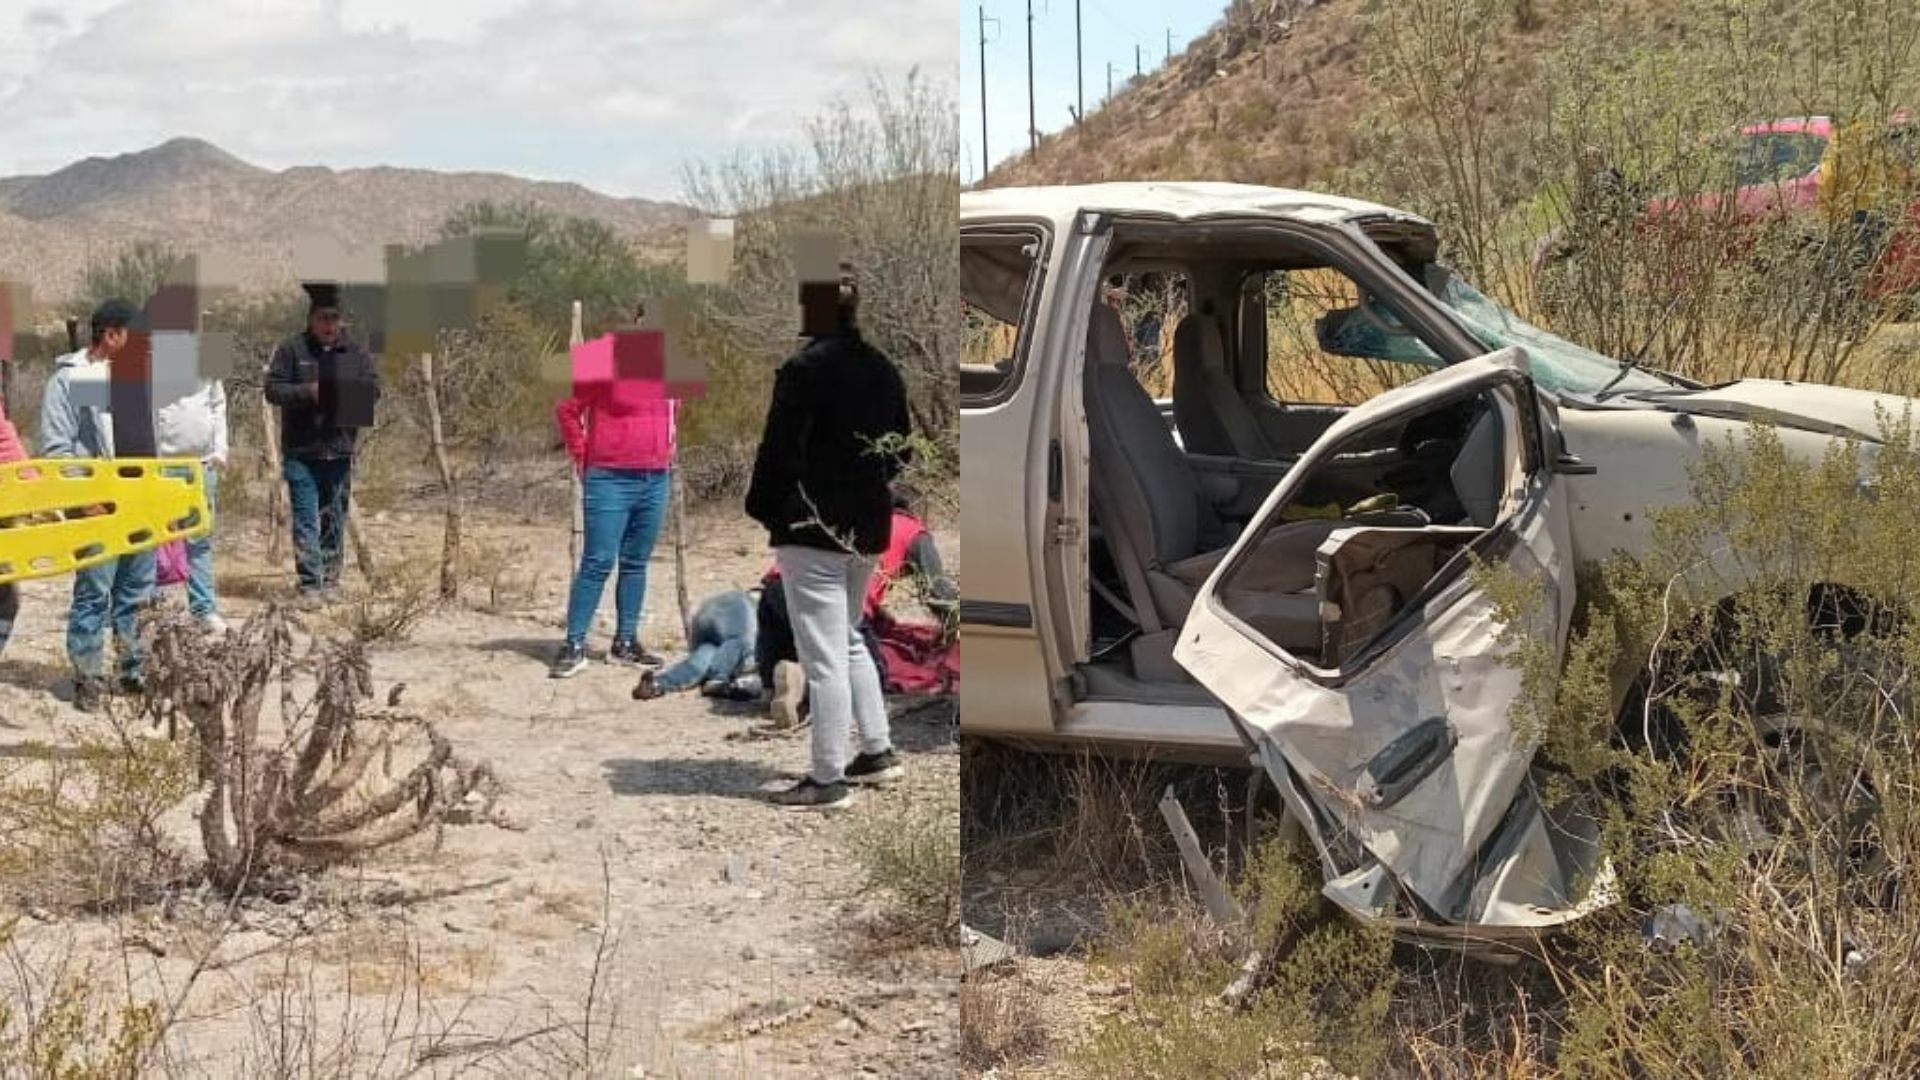 Vuelca camioneta con familia a bordo en Mapimí; hay tres lesionados